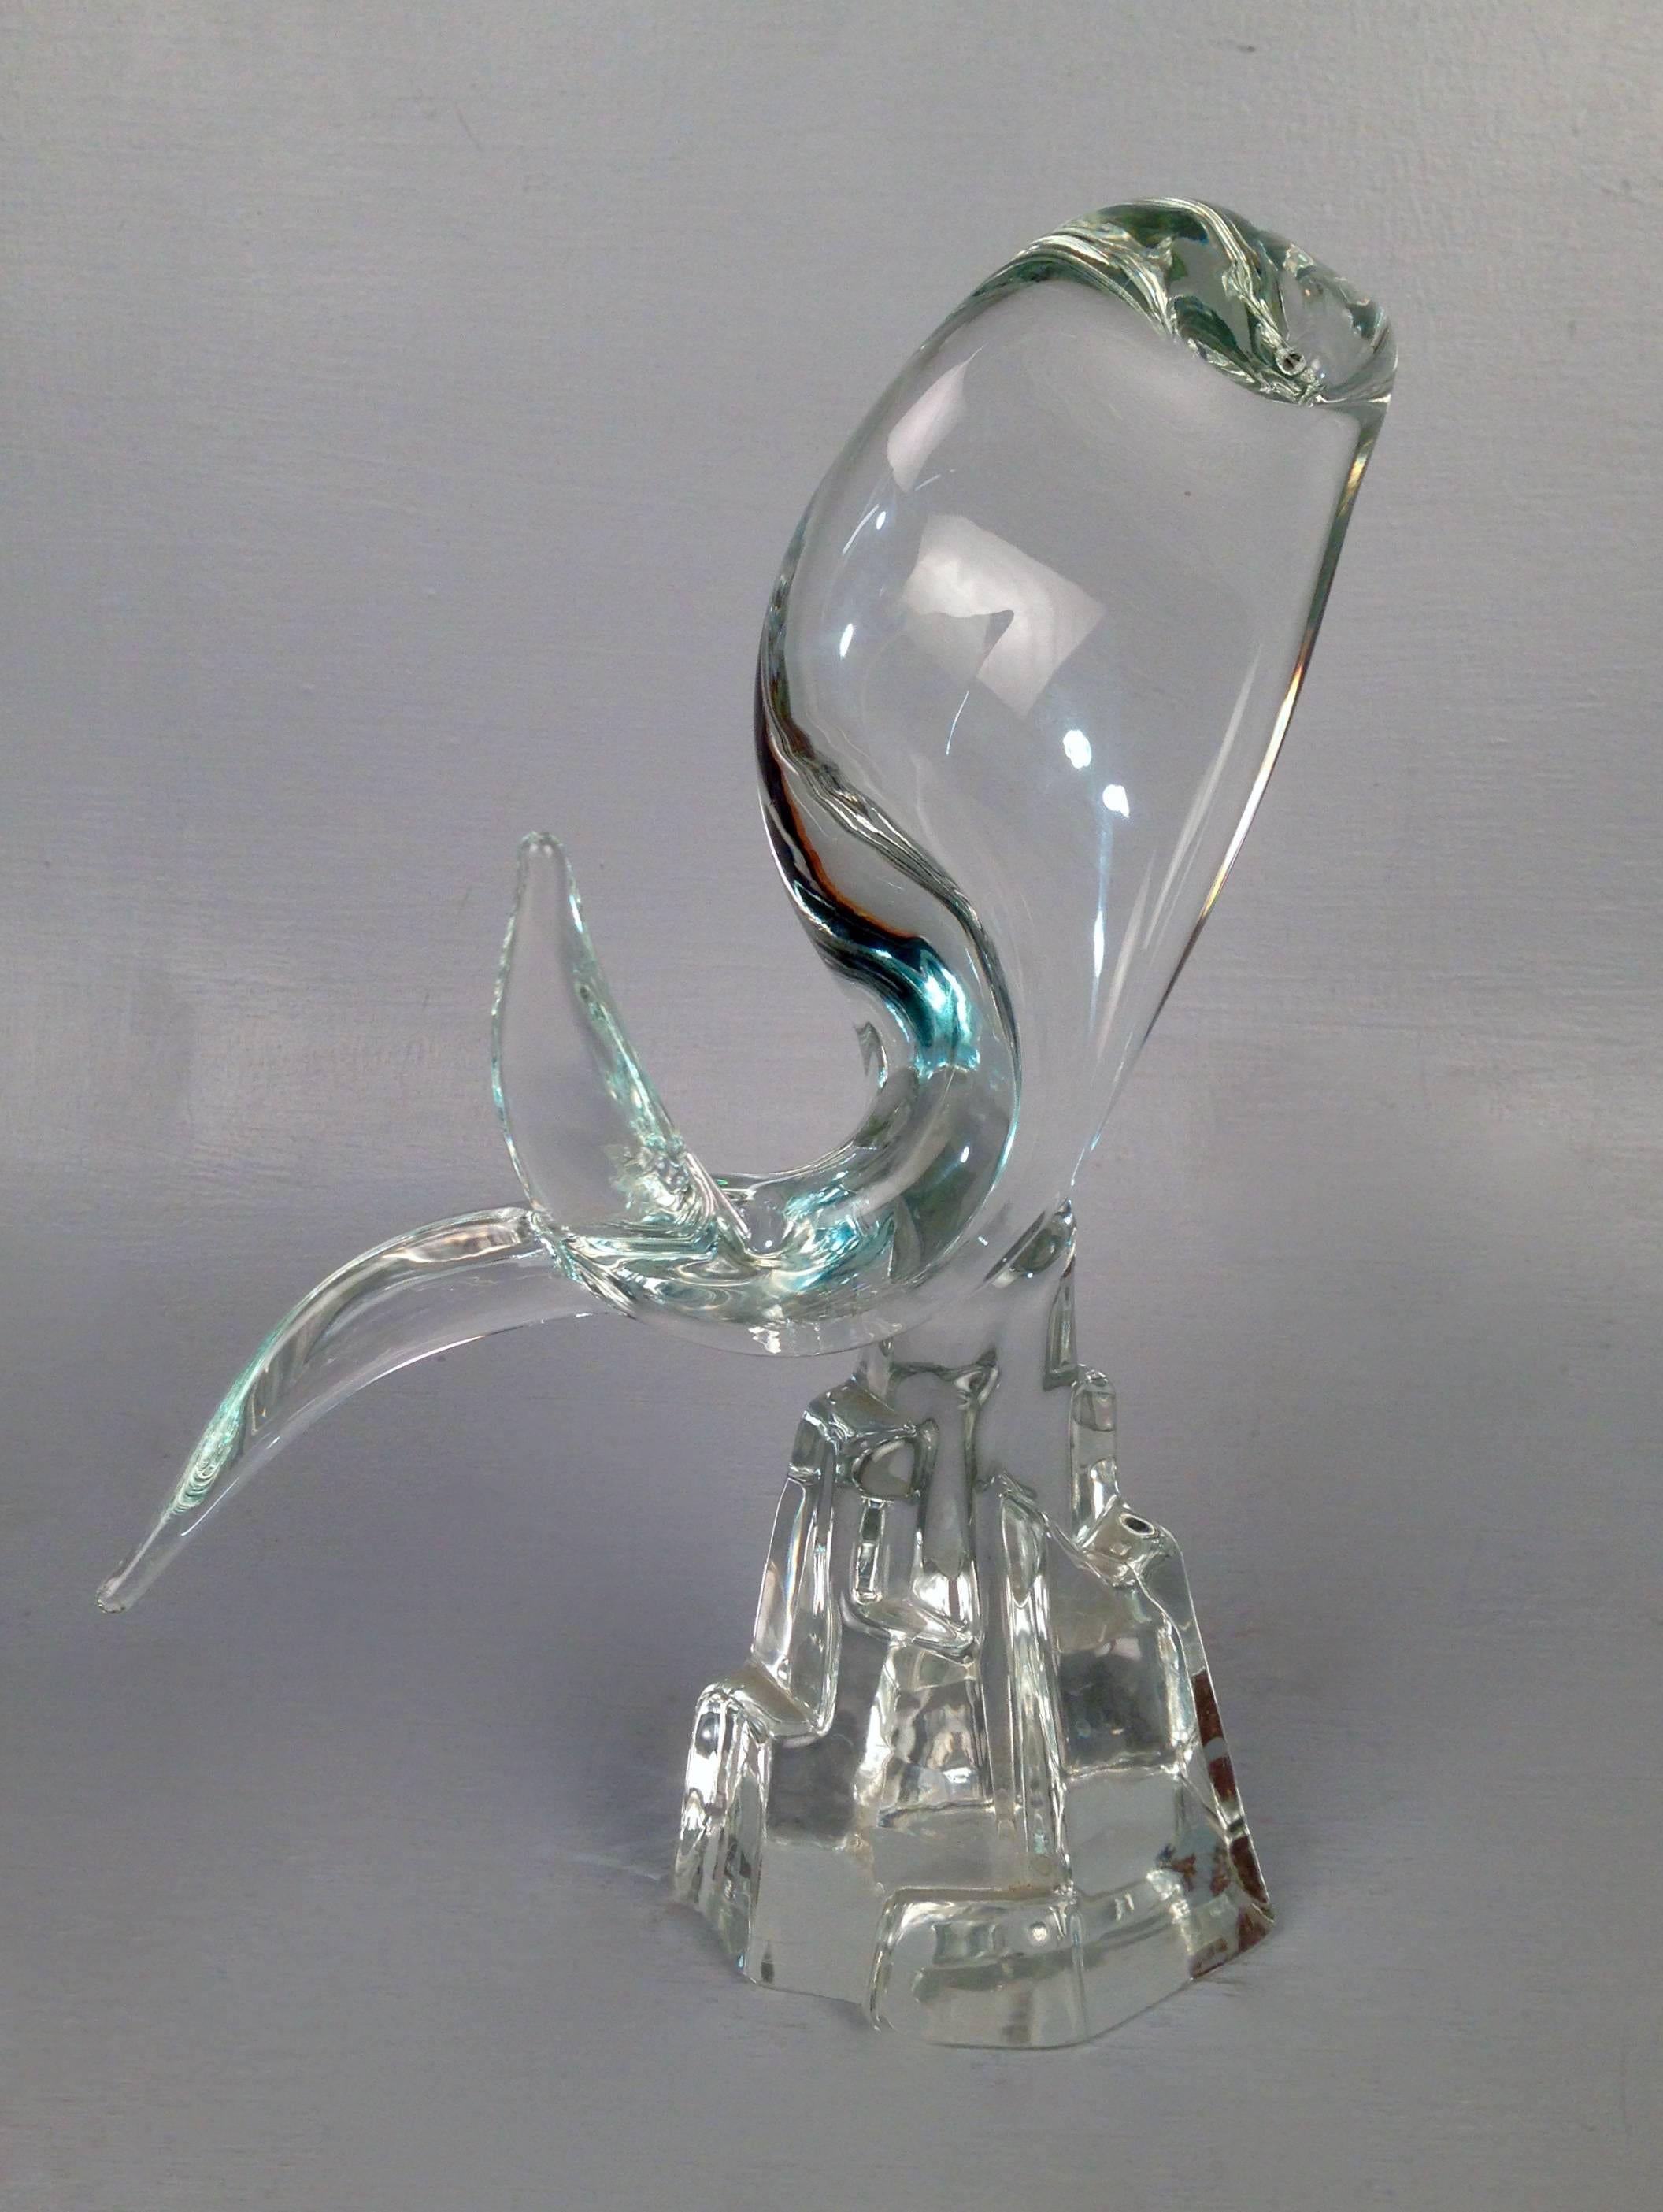 Italian Mid-Century Modern Murano Glass Art Glass Fish Sculpture by Licio Zanetti For Sale